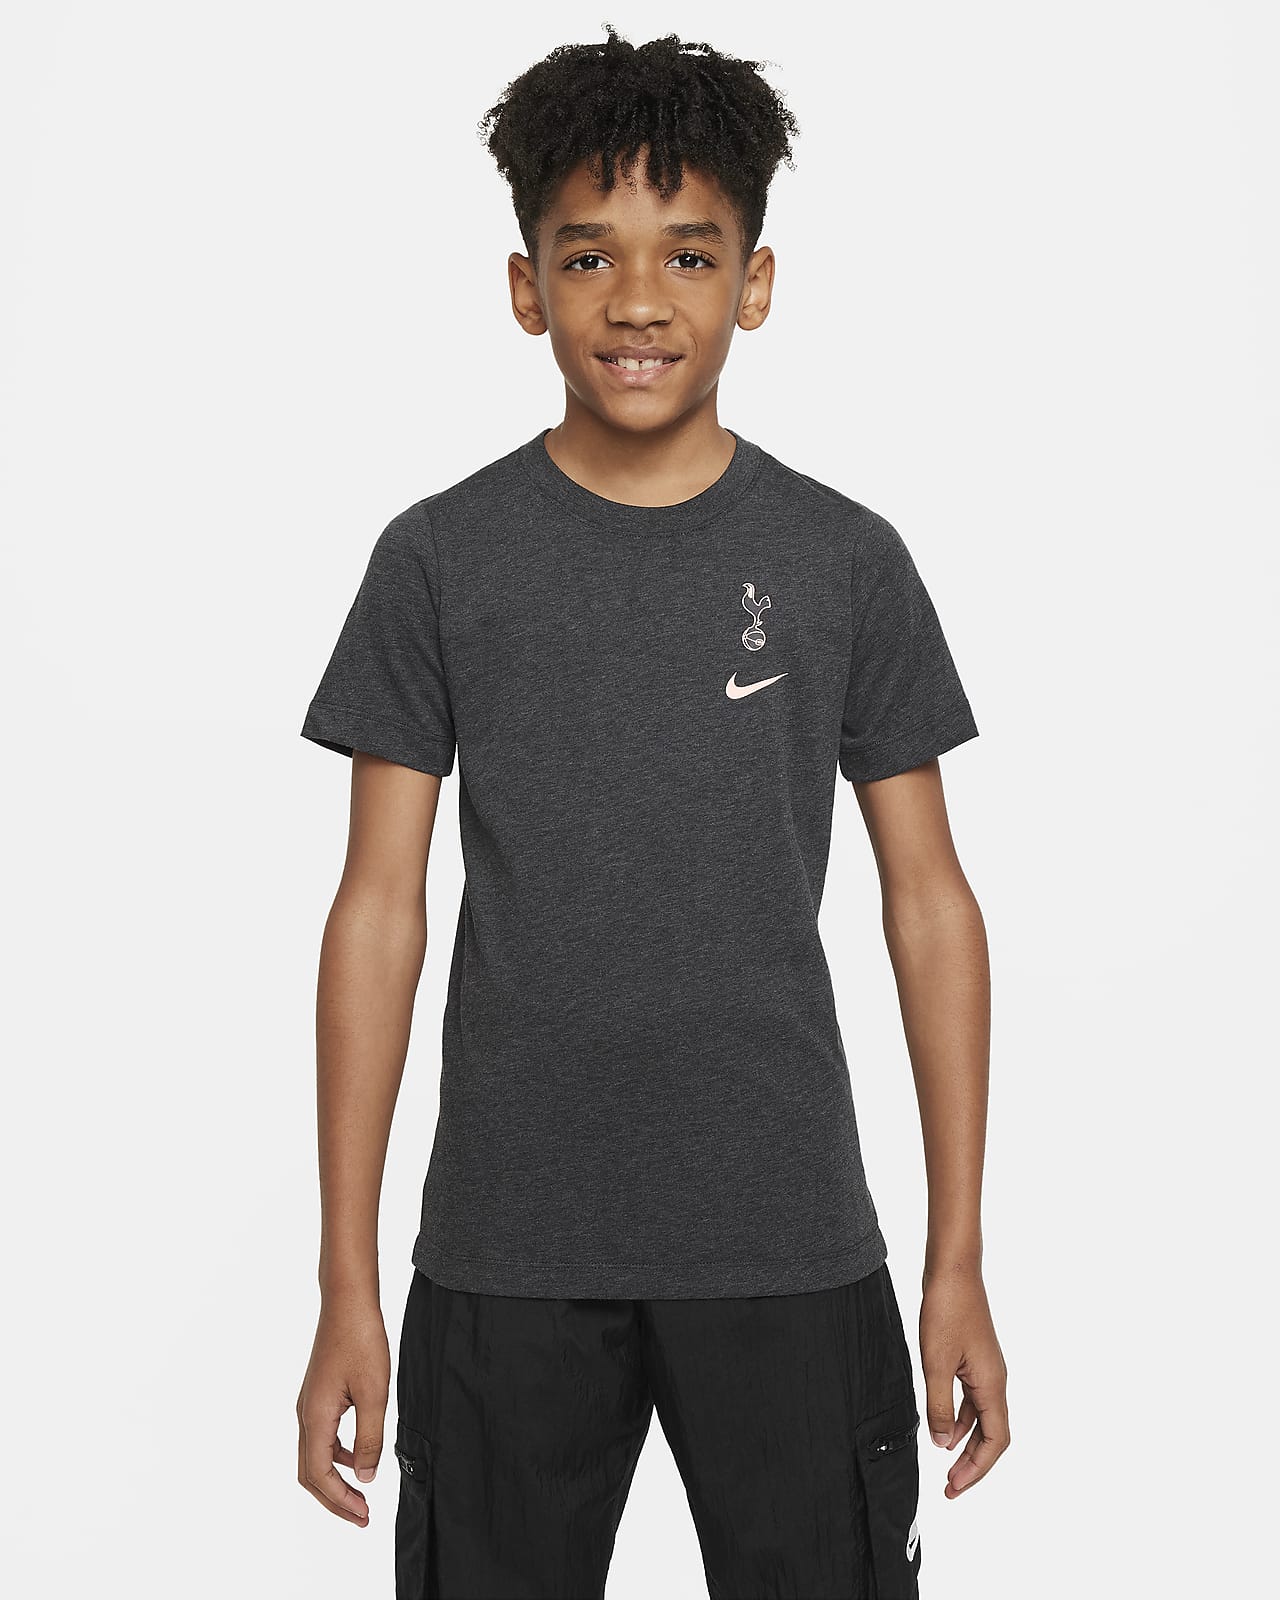 Ποδοσφαιρικό T-Shirt Nike Τότεναμ για μεγάλα παιδιά